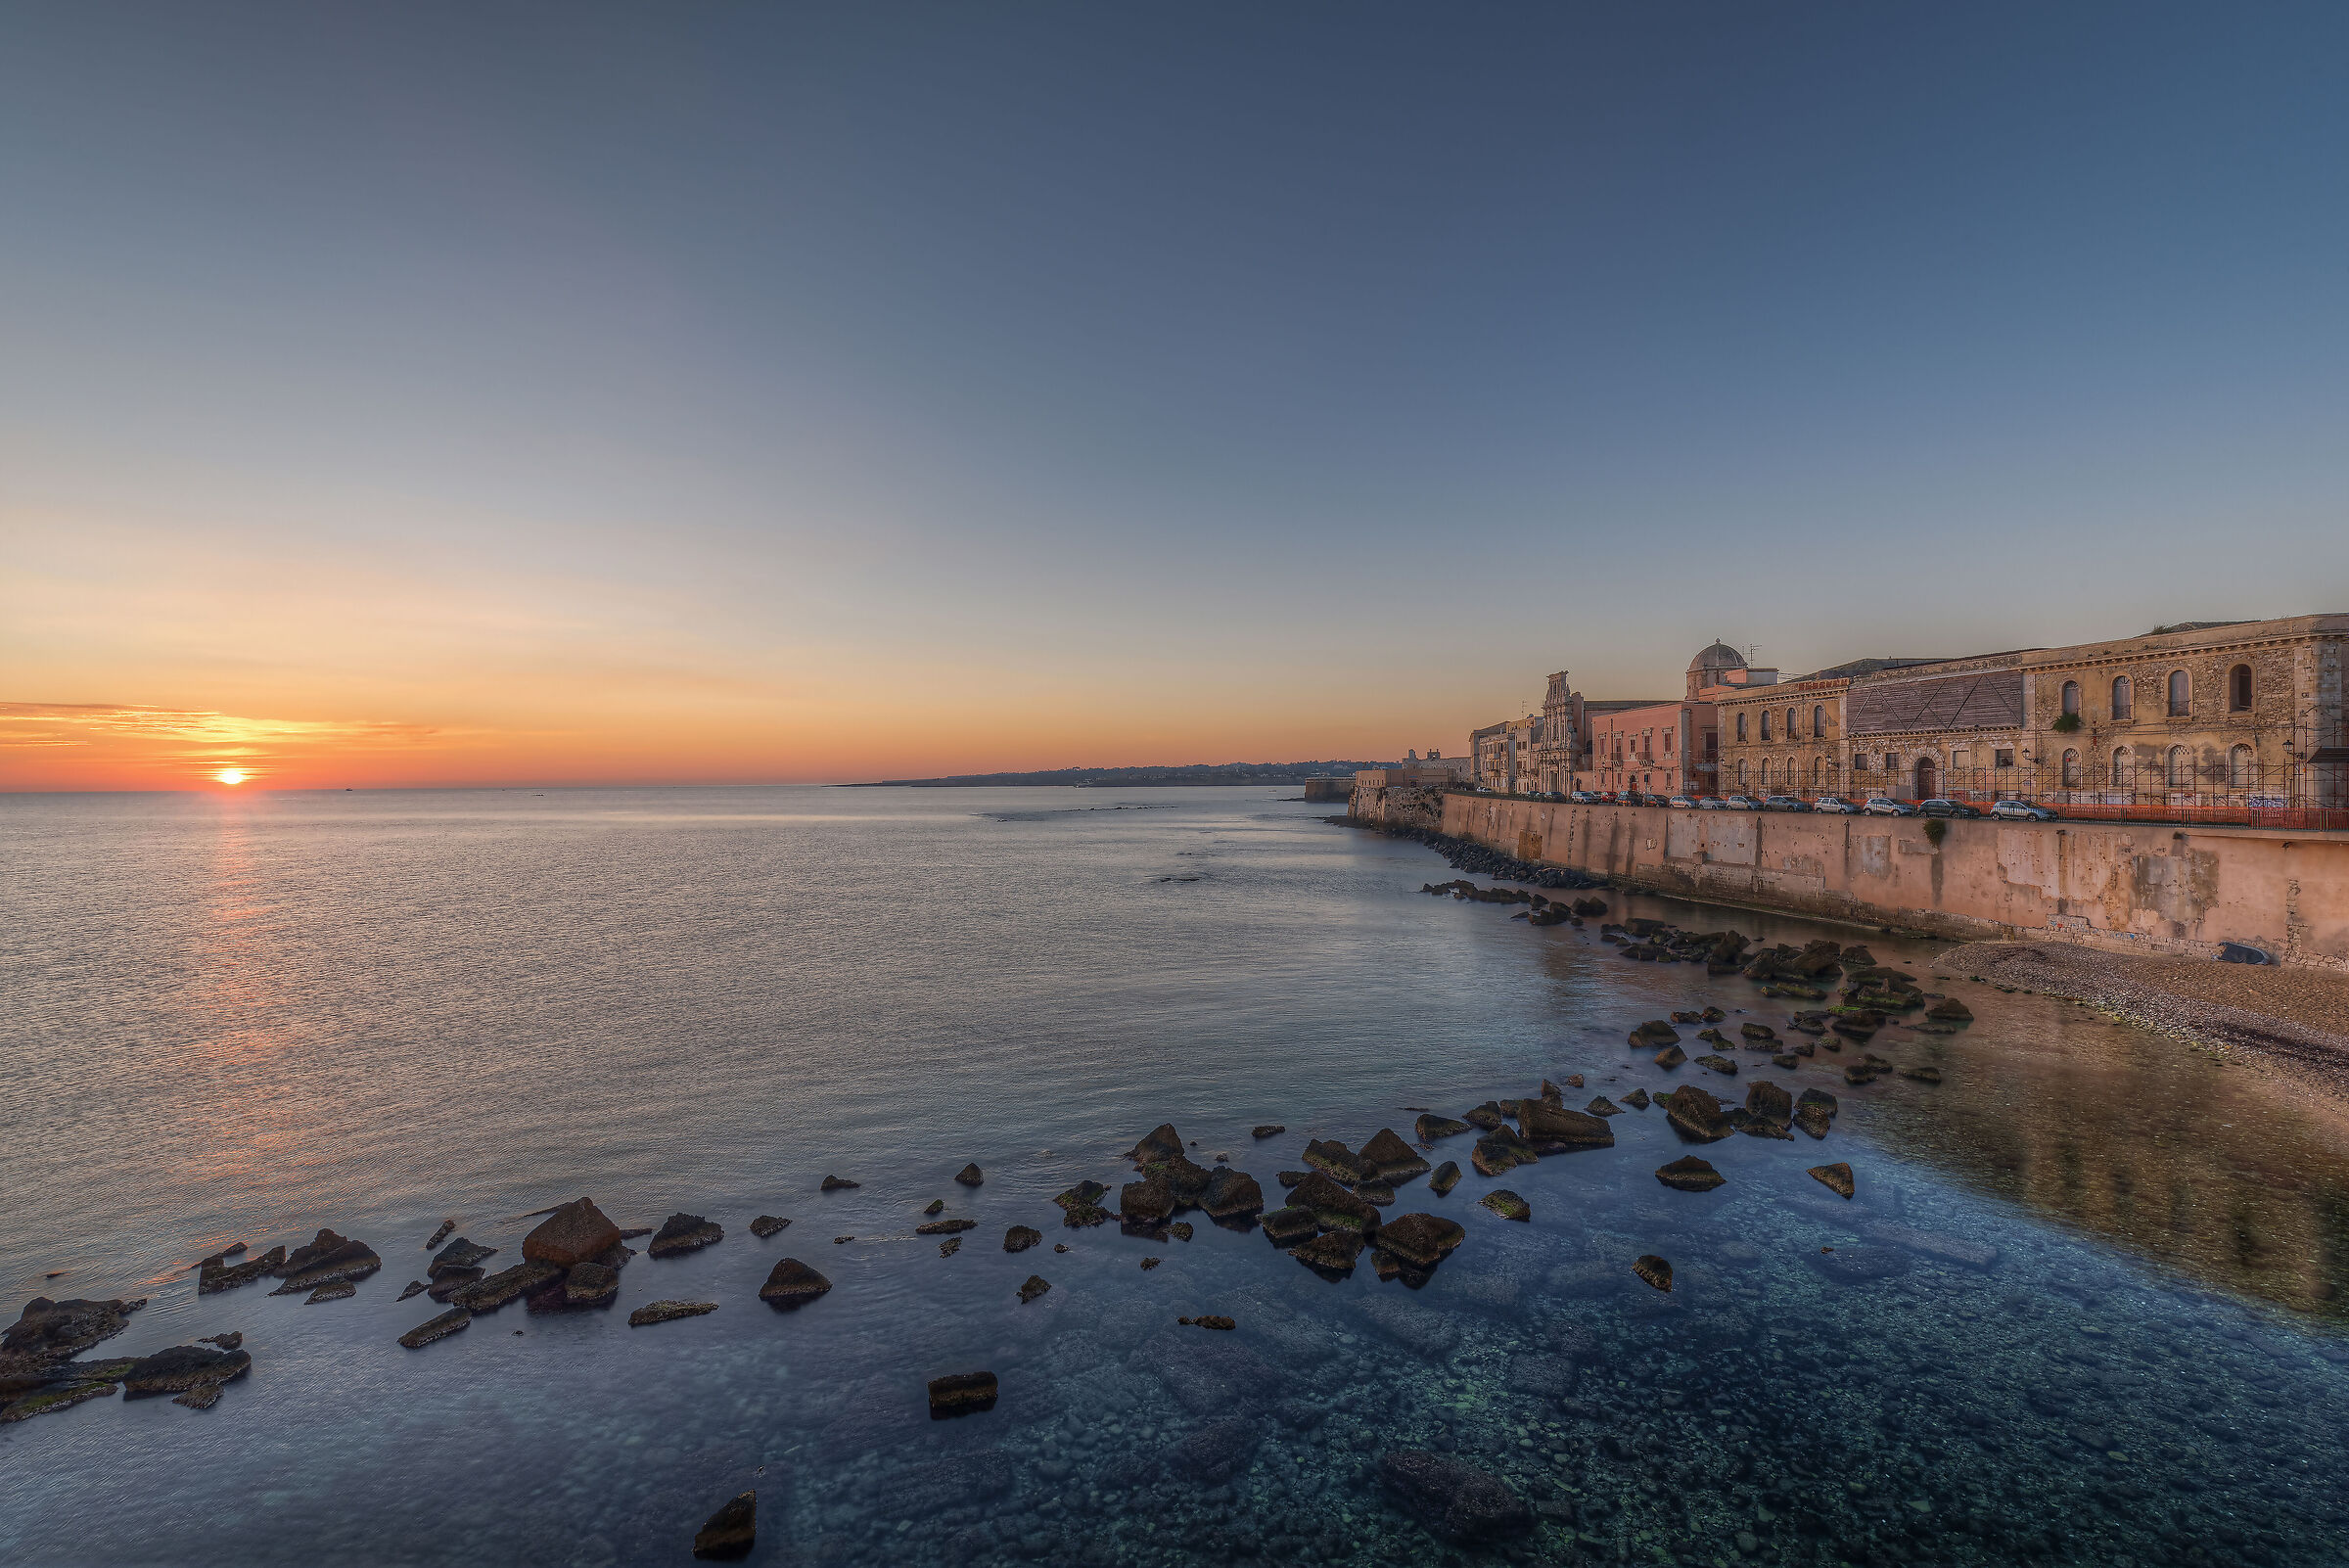 Sunrise on the seafront of Ortigia...